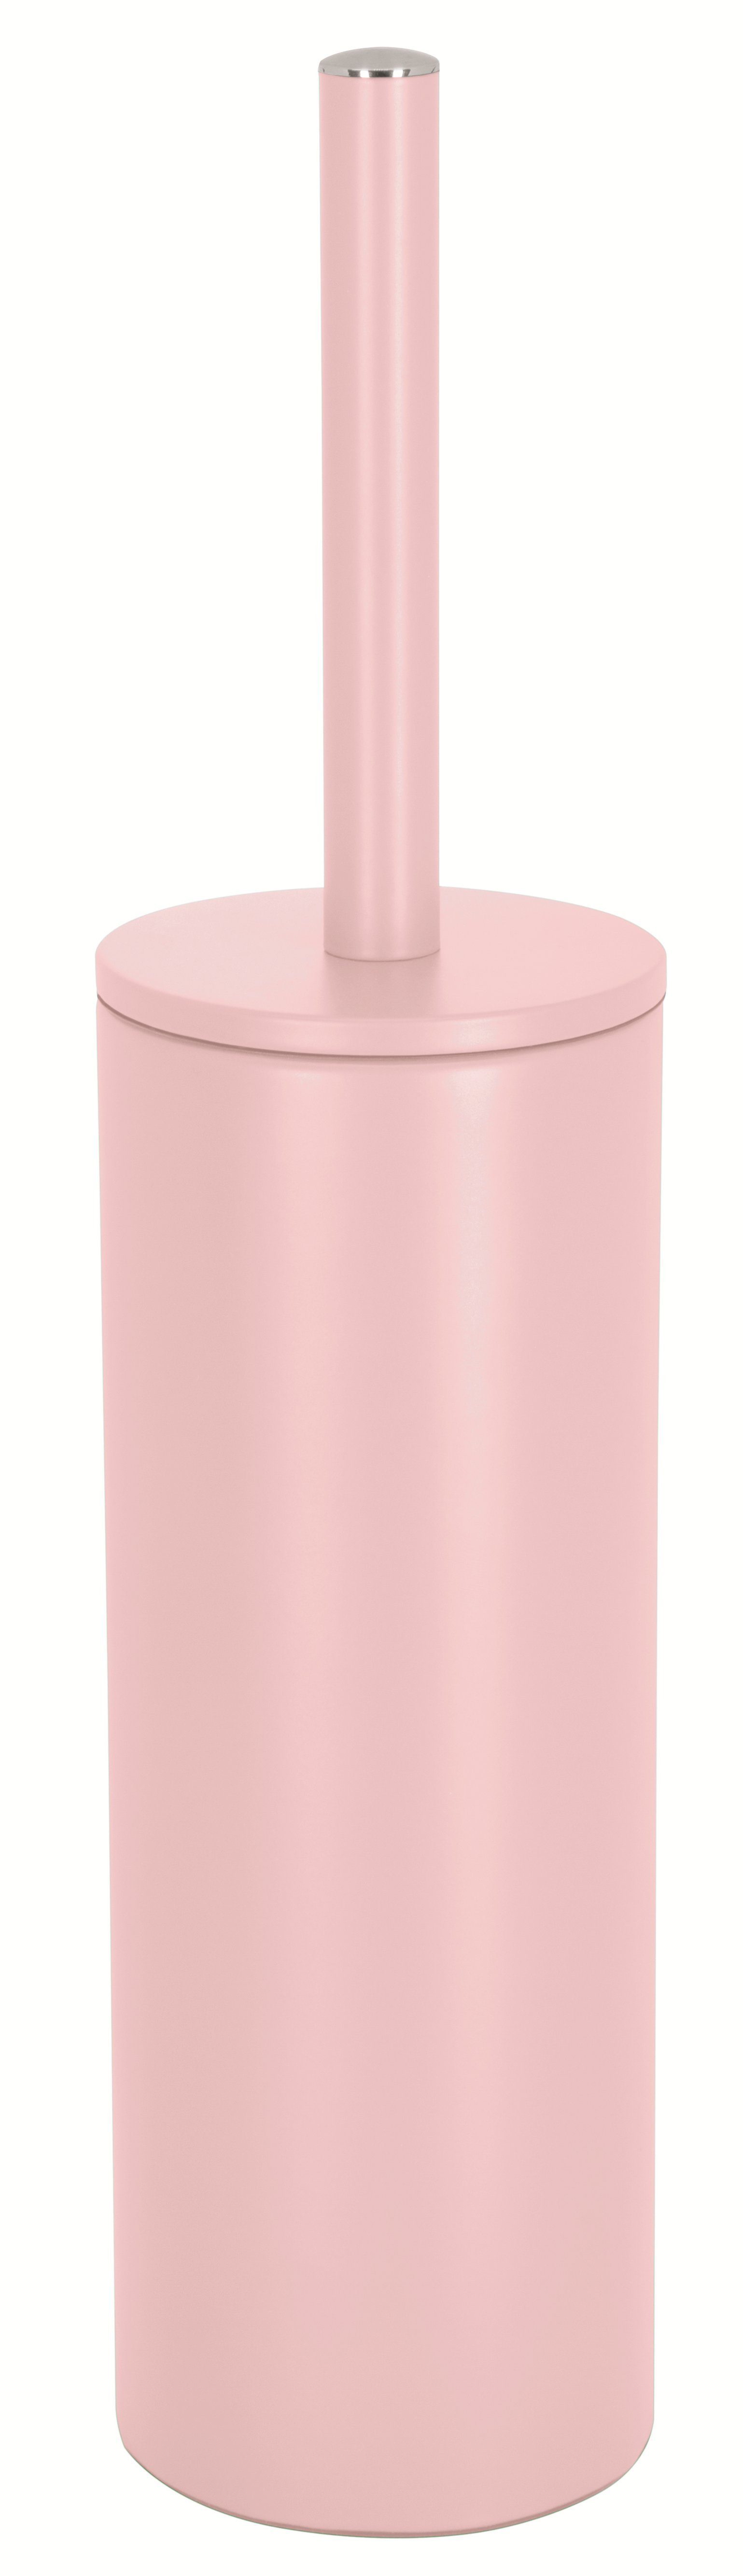 satiniert, elegantes rosa AKIRA, WC-Garnitur Toilettenbürste, Innenbehälter, mit spirella Deckel, mit rosa, hygienischem matt-satiniert, pulverbeschichteter Innenbehälter, Stahl, Toilettenbürste Matt-Finish, hygienischer